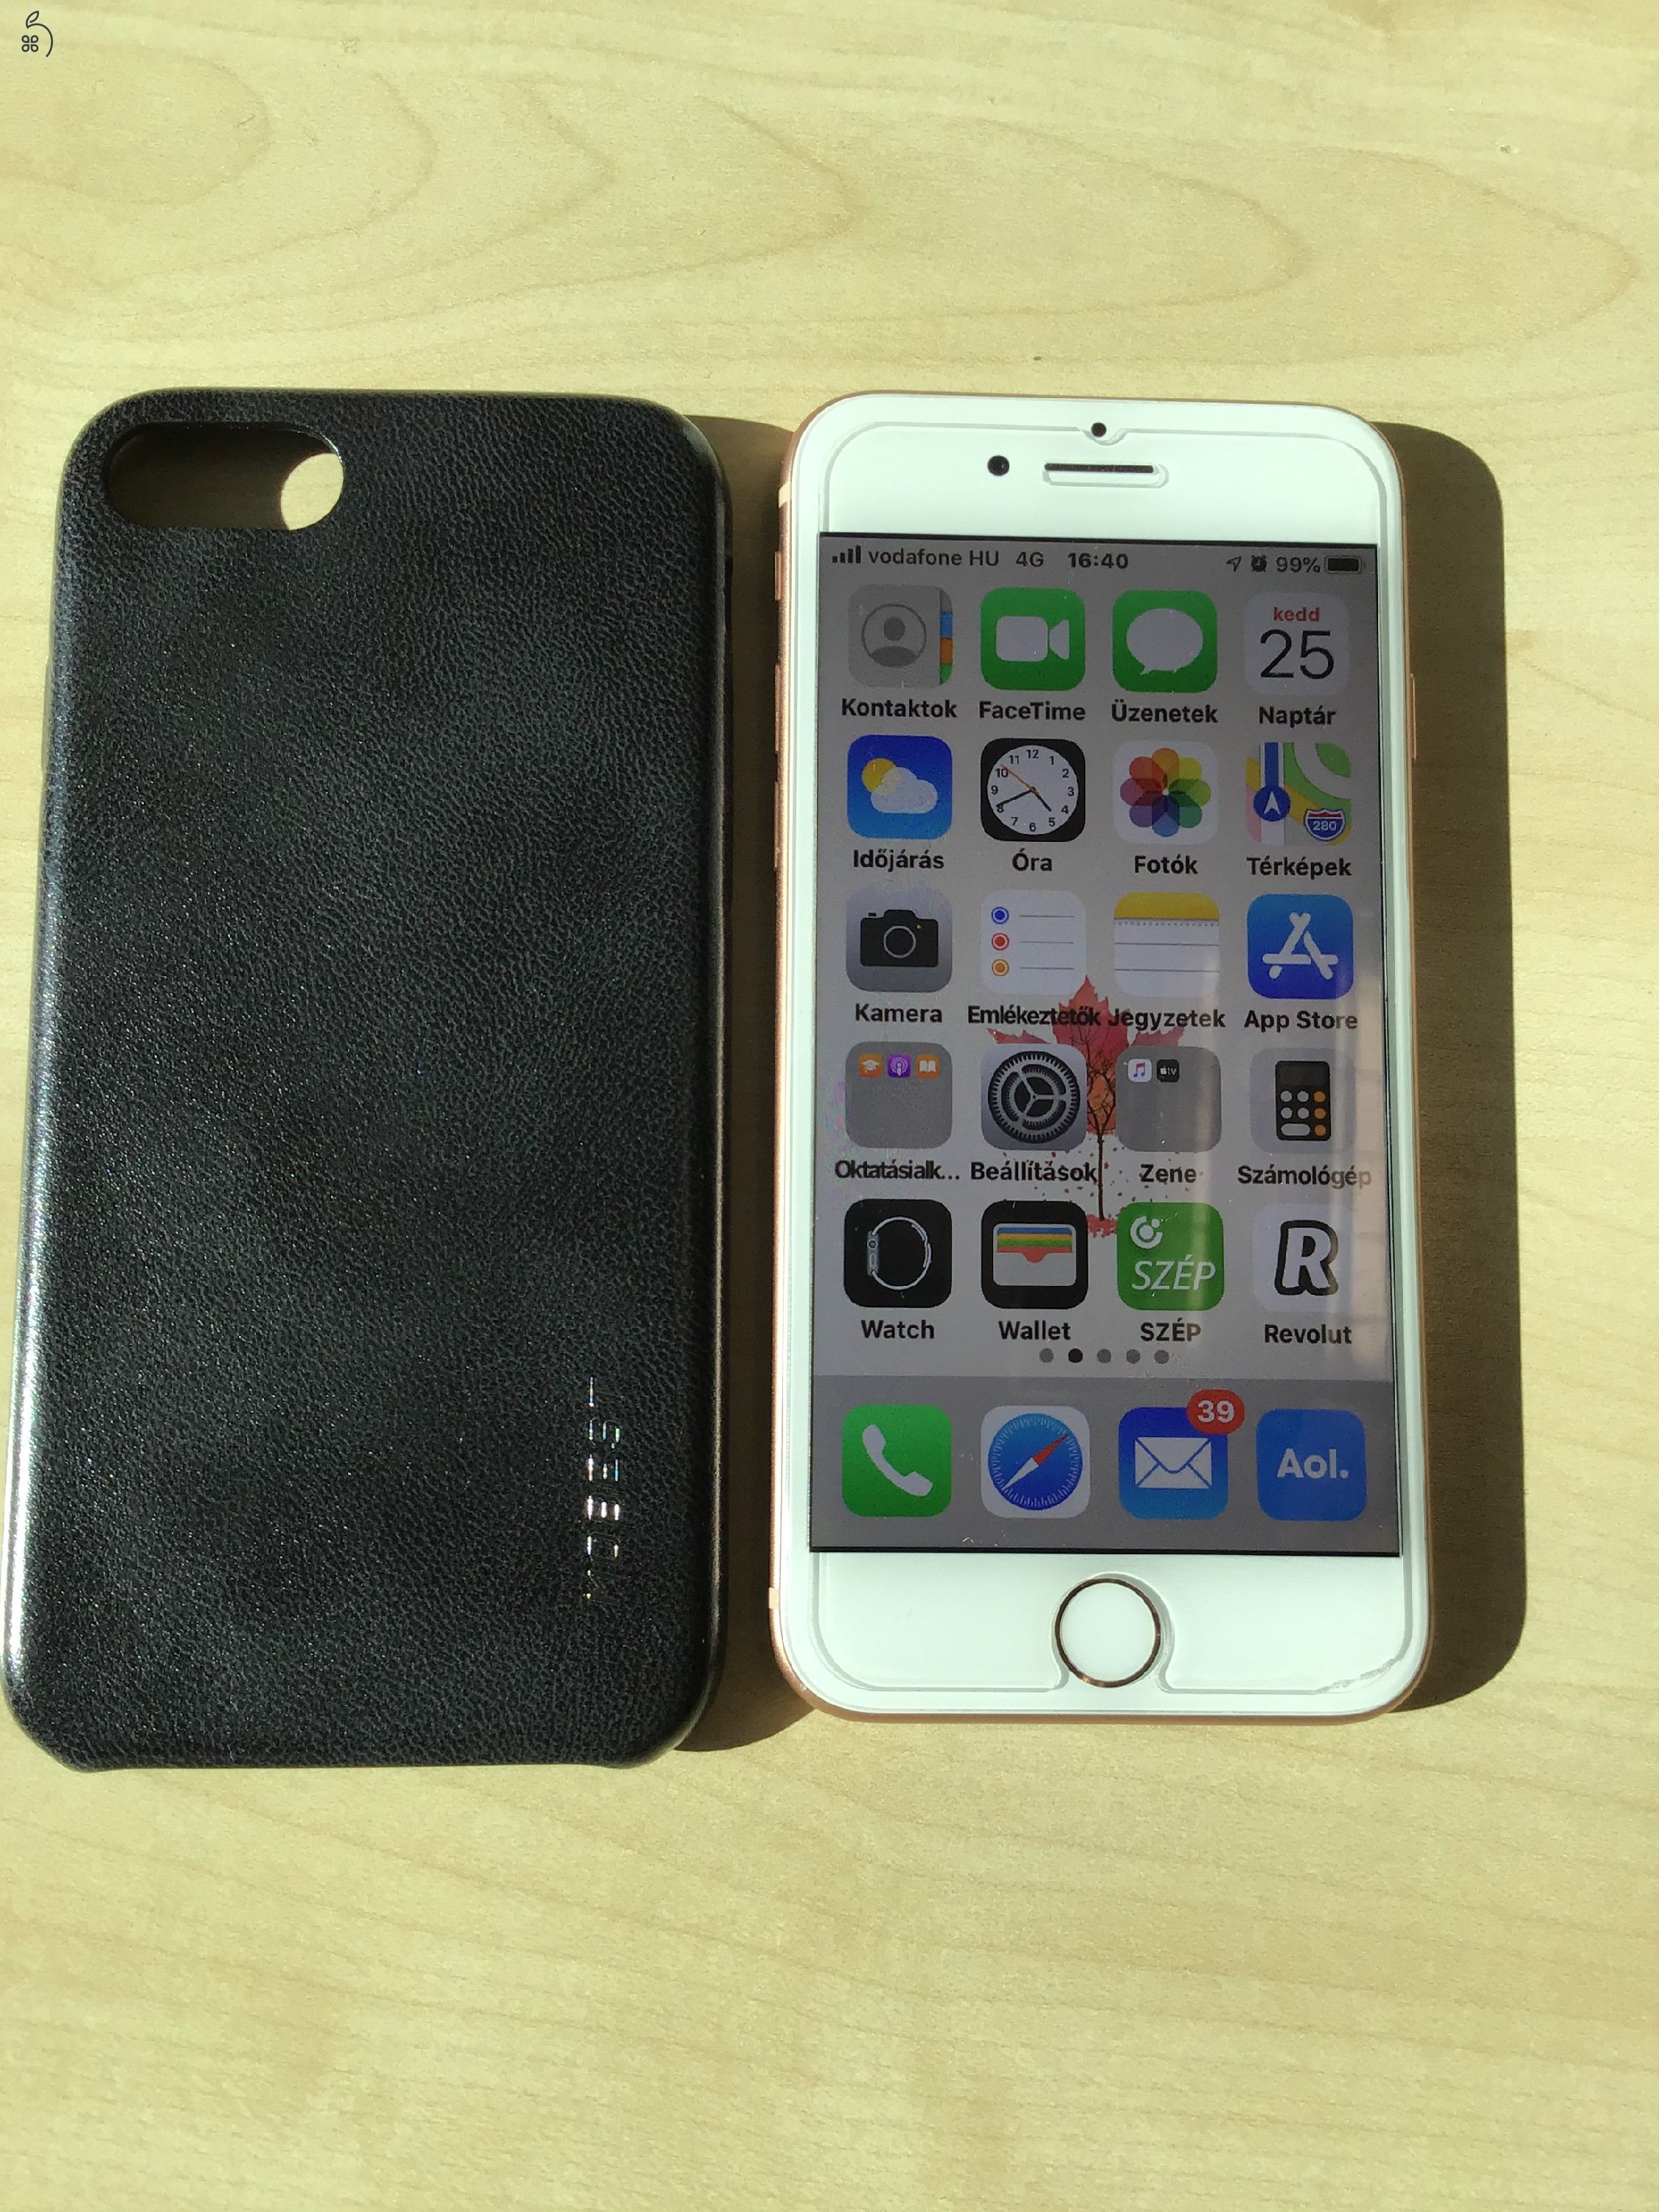 iPhone 8 64 GB Gold színű független mobiltelefon tökéletes állapotban eladó